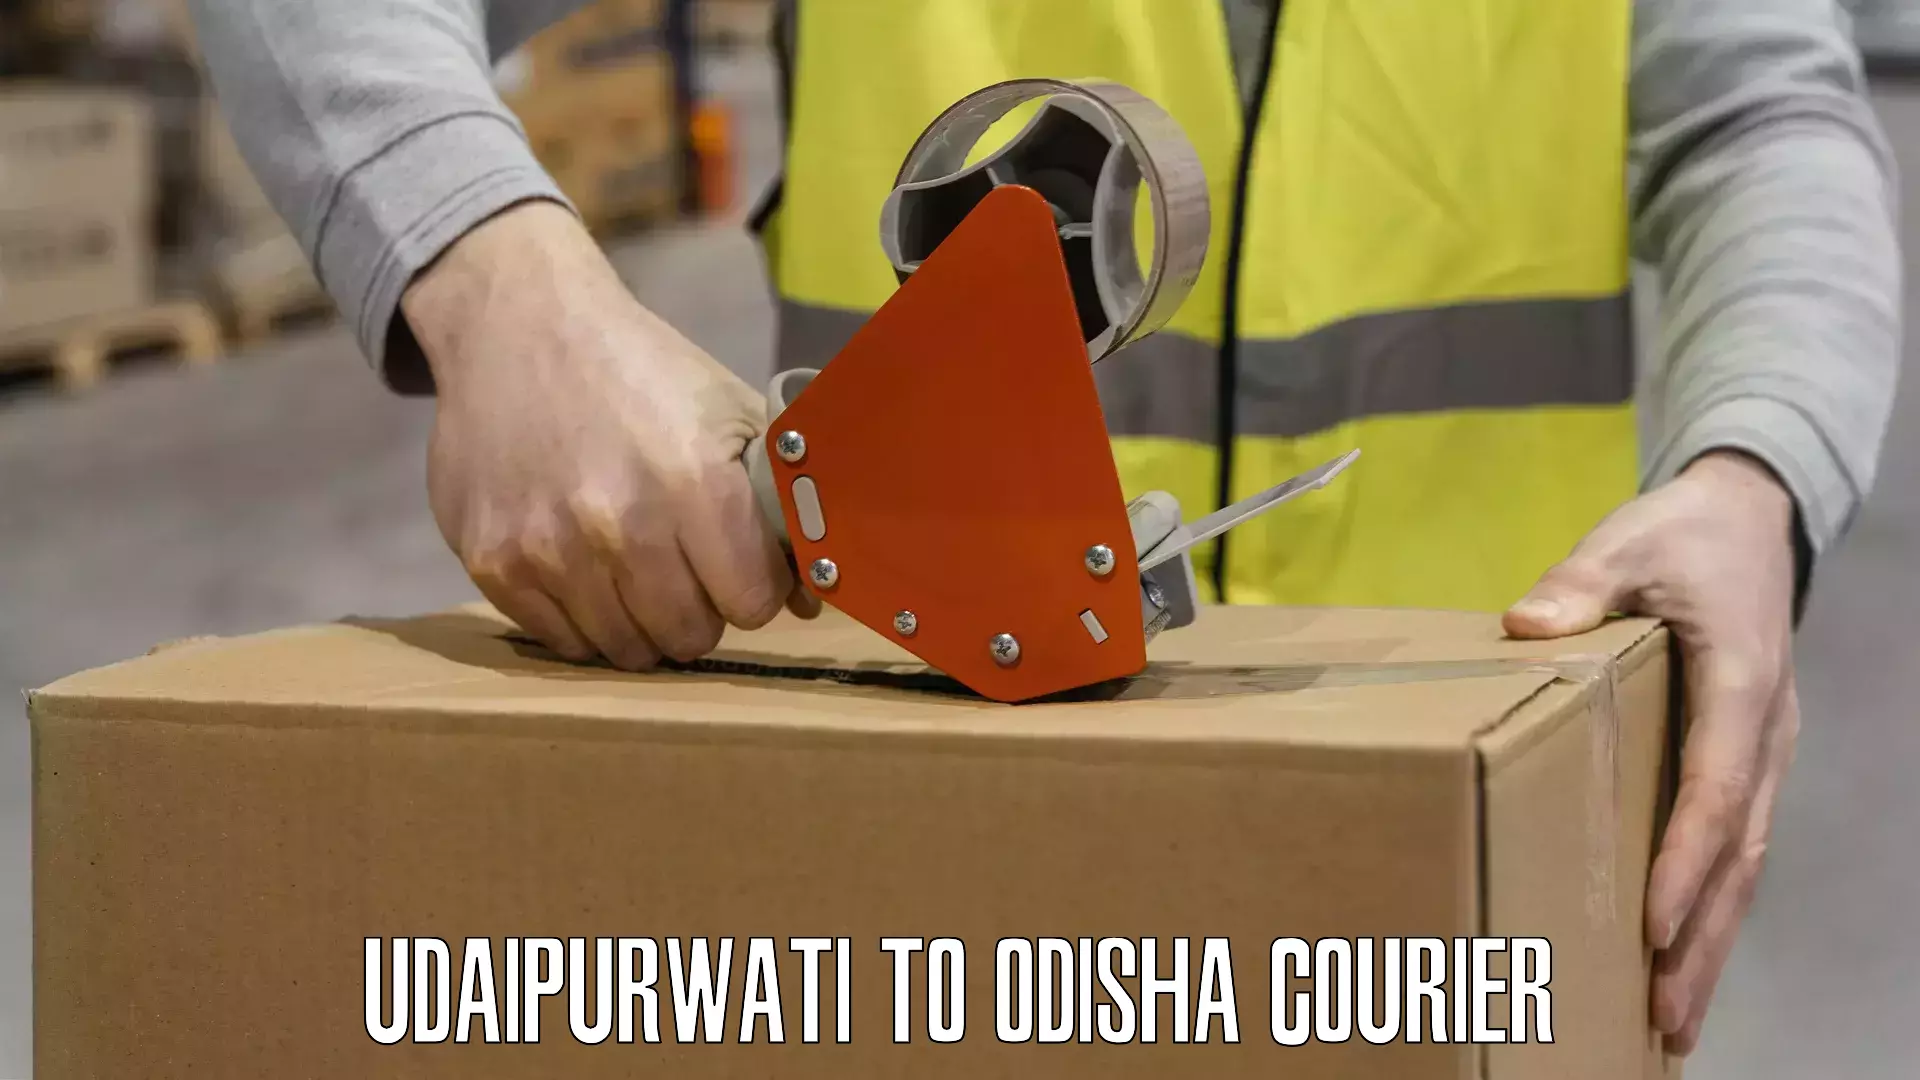 Custom courier packaging Udaipurwati to Siksha O Anusandhan Bhubaneswar